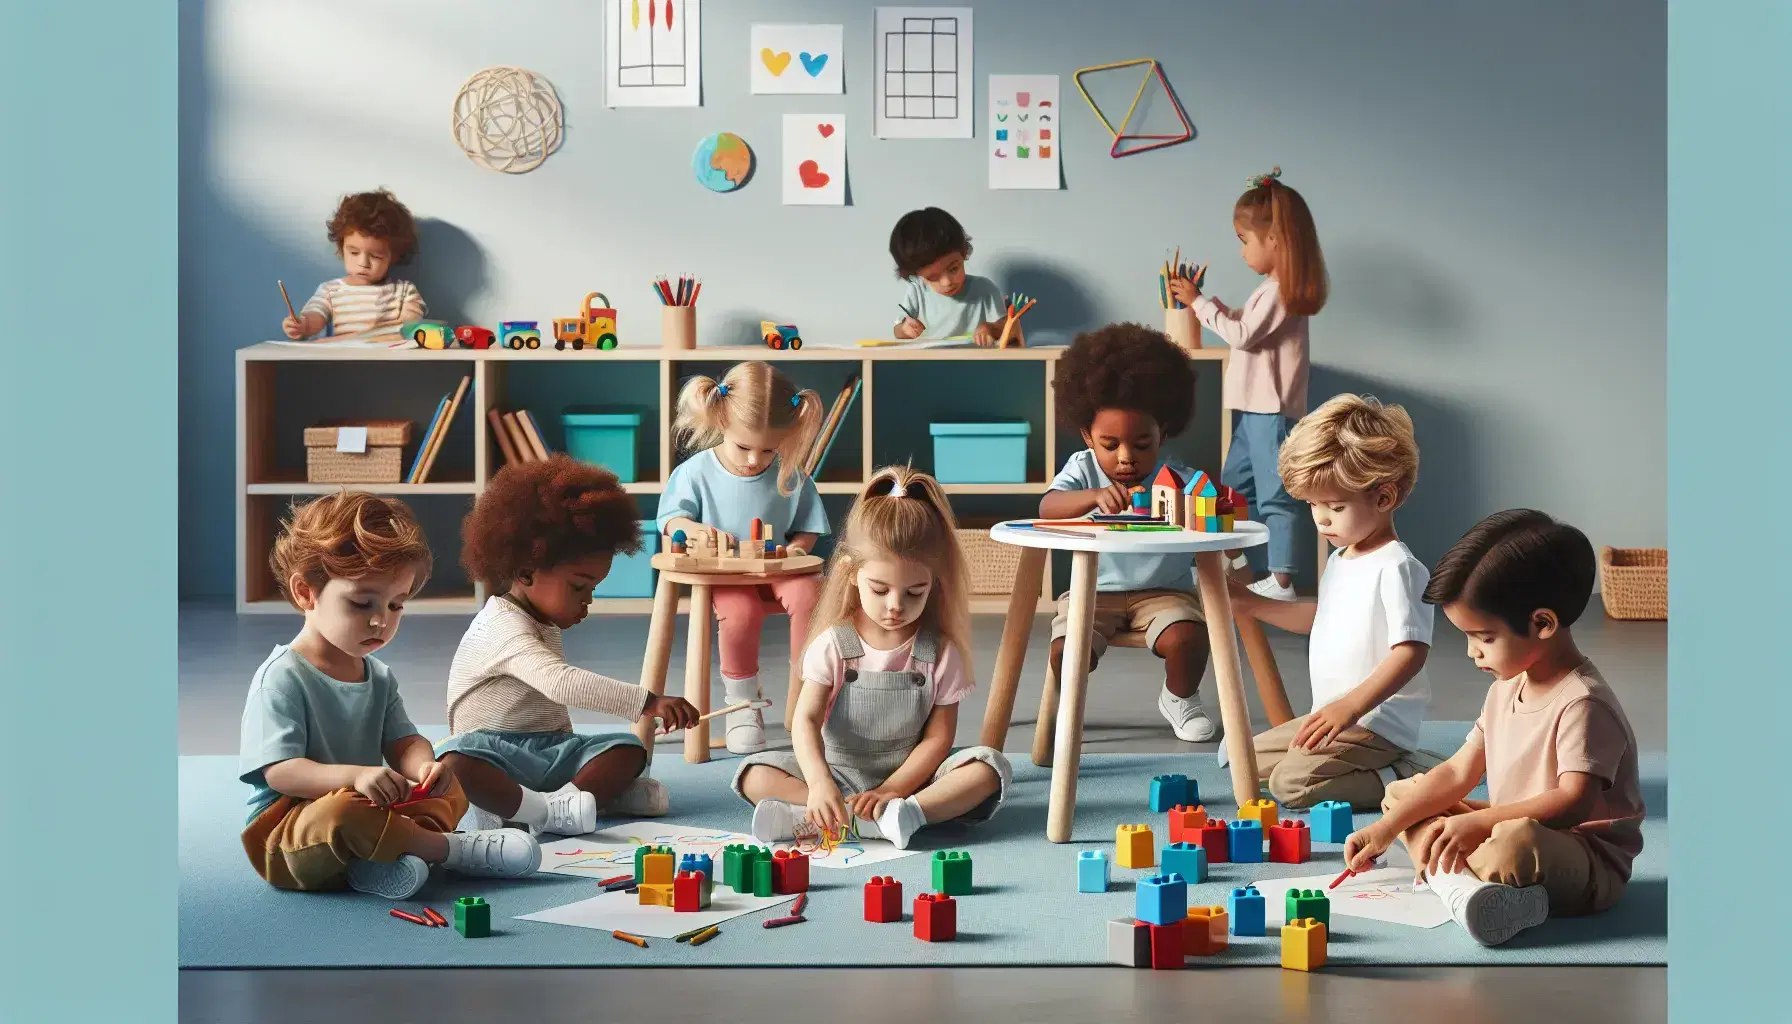 Niños de diversas edades participan en actividades educativas en un aula colorida, con uno construyendo con bloques, otros dibujando y uno seleccionando juguetes de un estante.